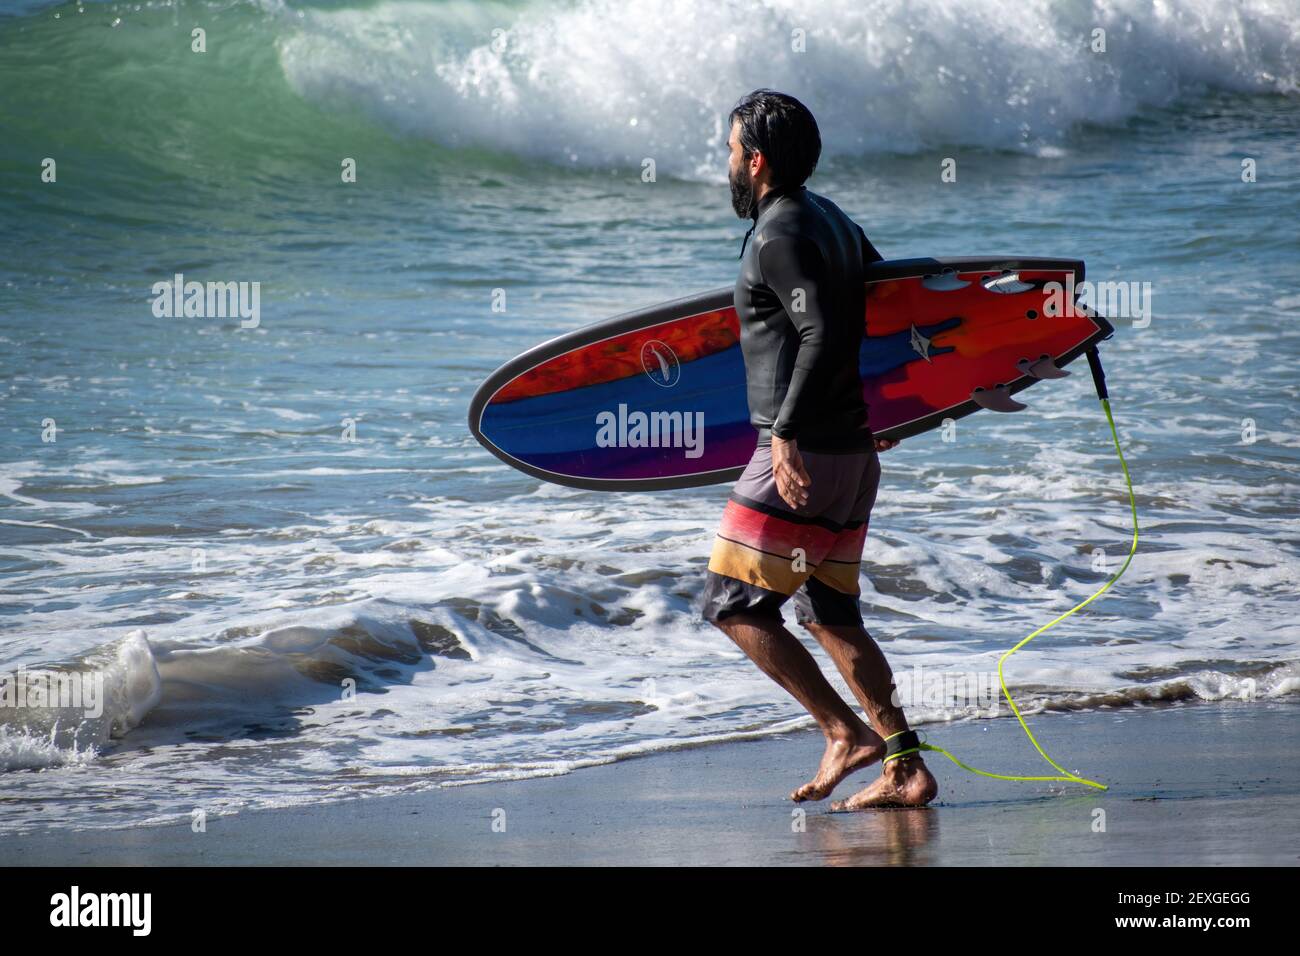 AUCKLAND, NUOVA ZELANDA - 23 febbraio 2021: Vista del surfer con il surf colorato che entra in acqua alla spiaggia di Piha, Auckland, Nuova Zelanda Foto Stock